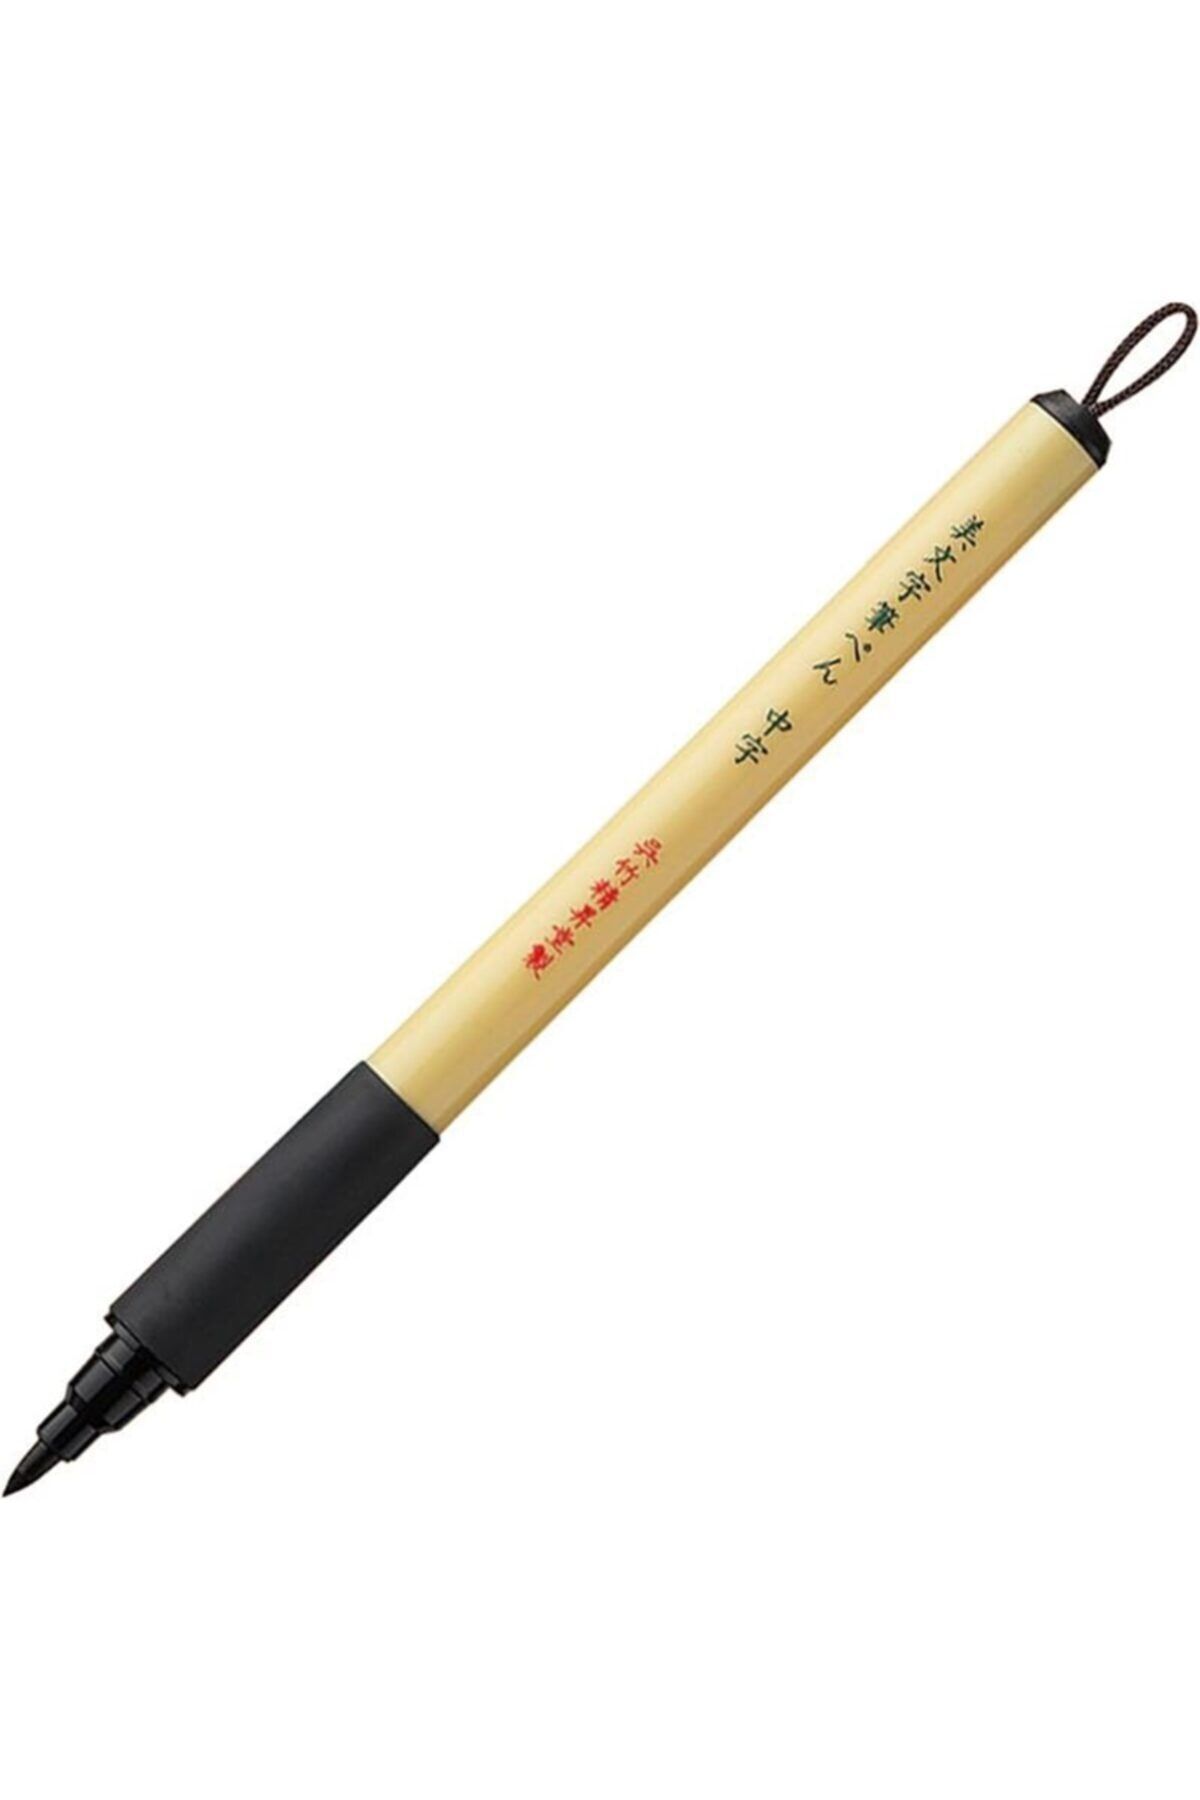 Zig Kuretake Bimoji Brush Pen Extra Fine